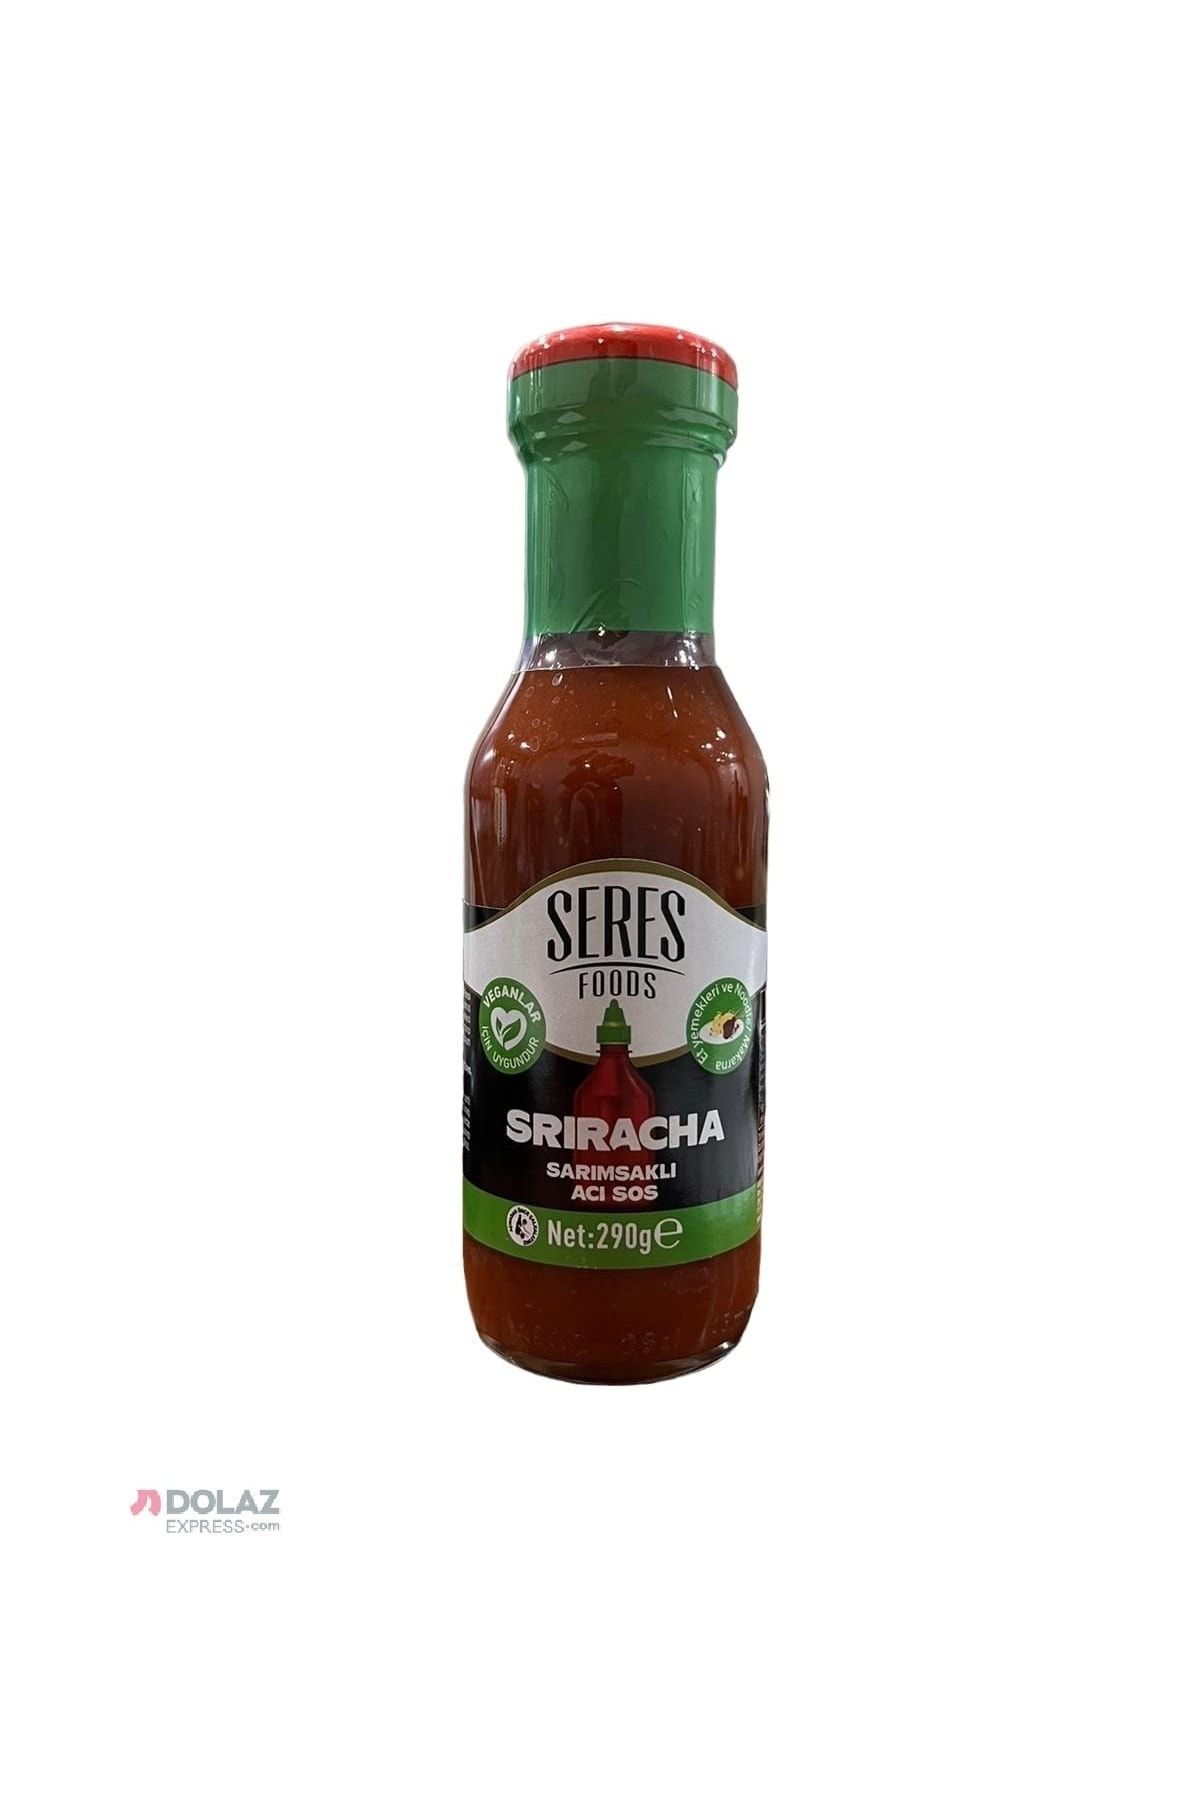 Seres Foods Sriracha Sarımsaklı Acı Sos Özel Seri Cam 250 ml